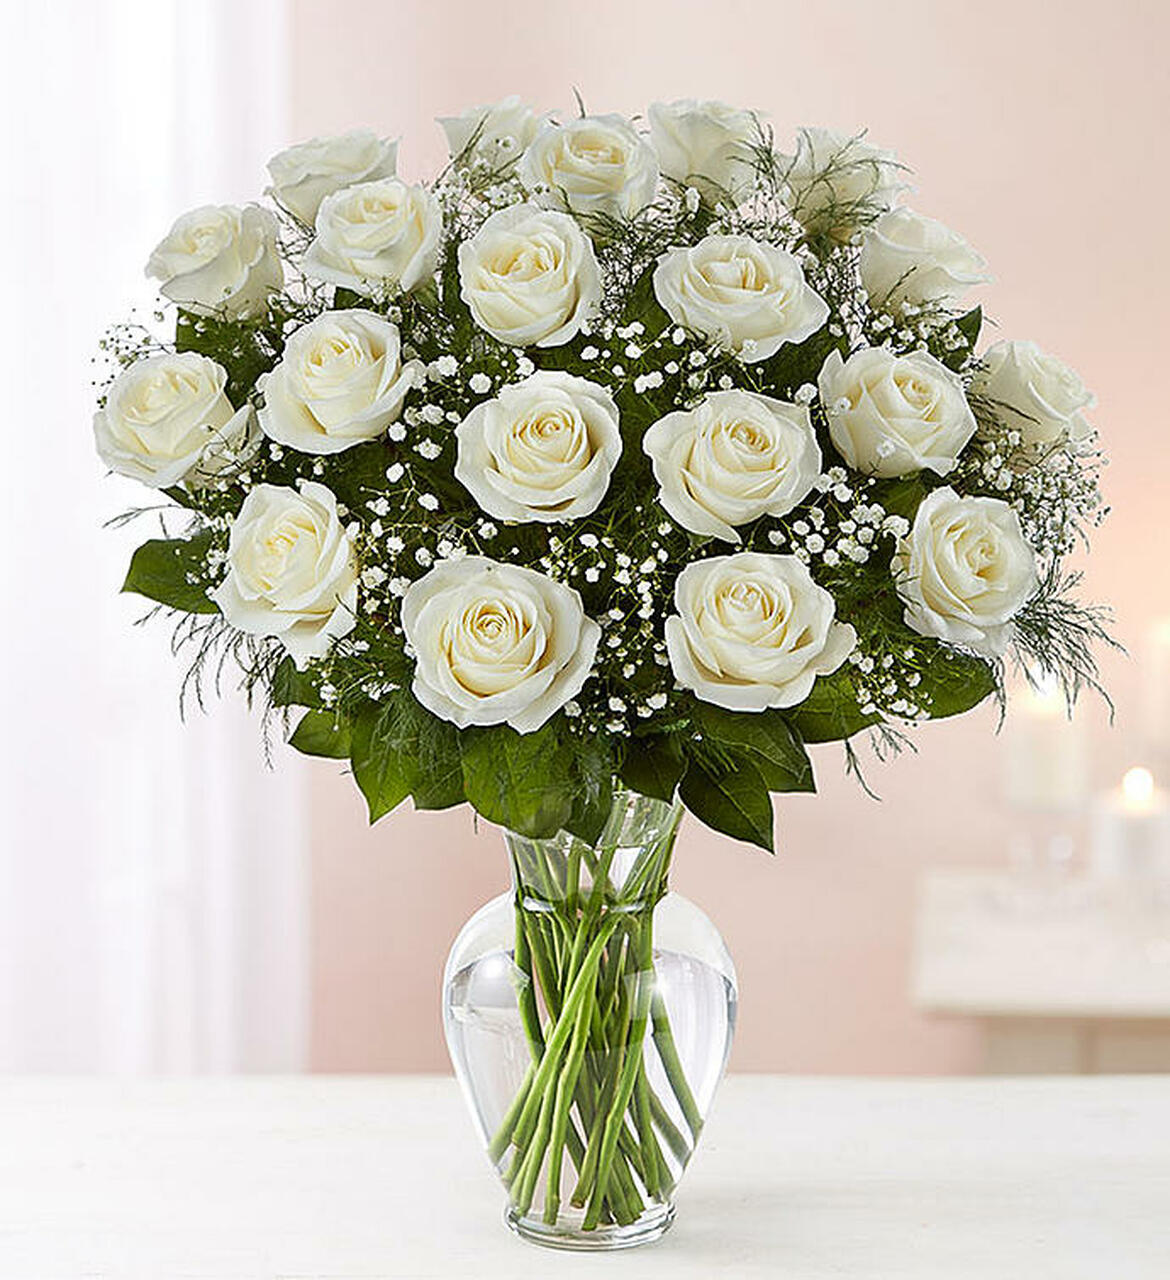 White Rose Bouquet Images - KibrisPDR